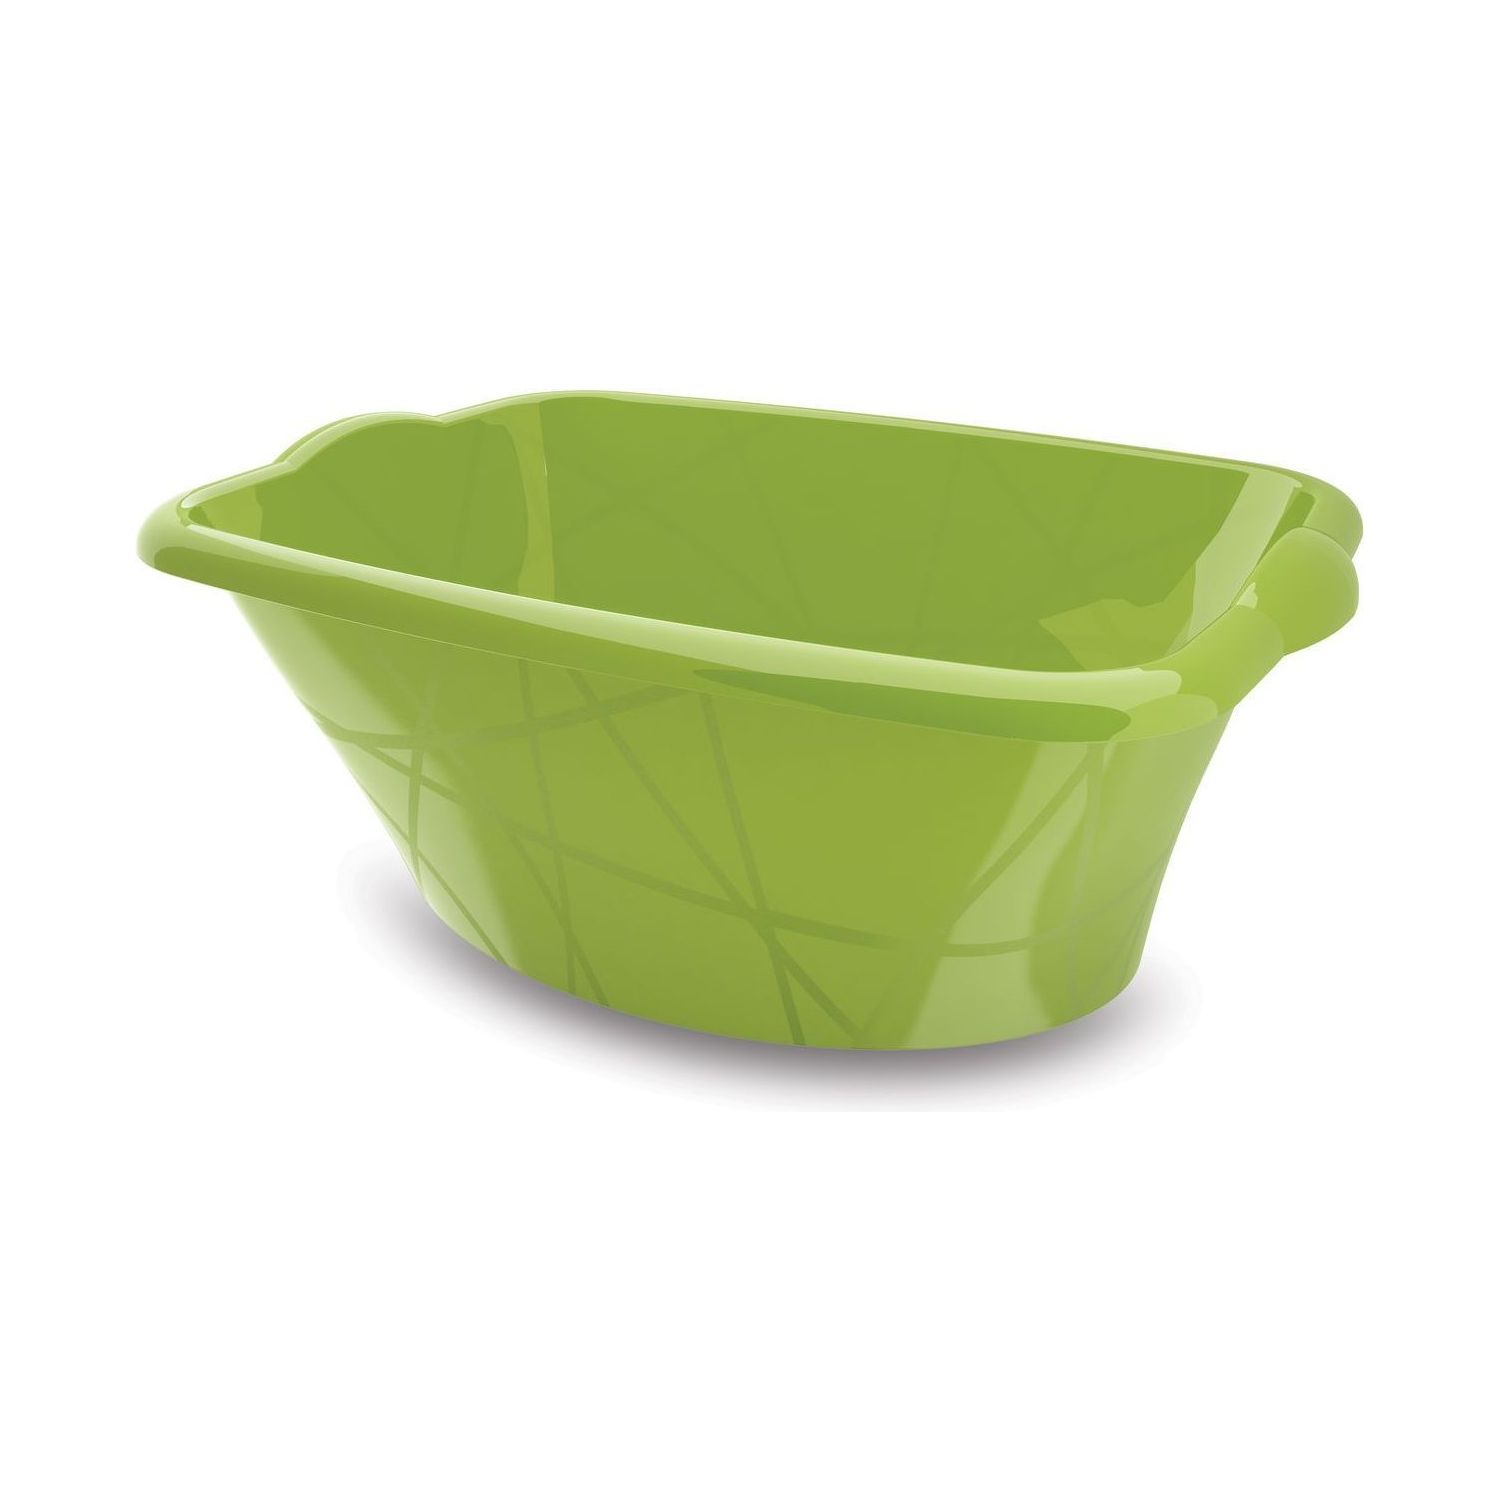 Umývadlo plastové obdélníkové M - zelené 14 litrů